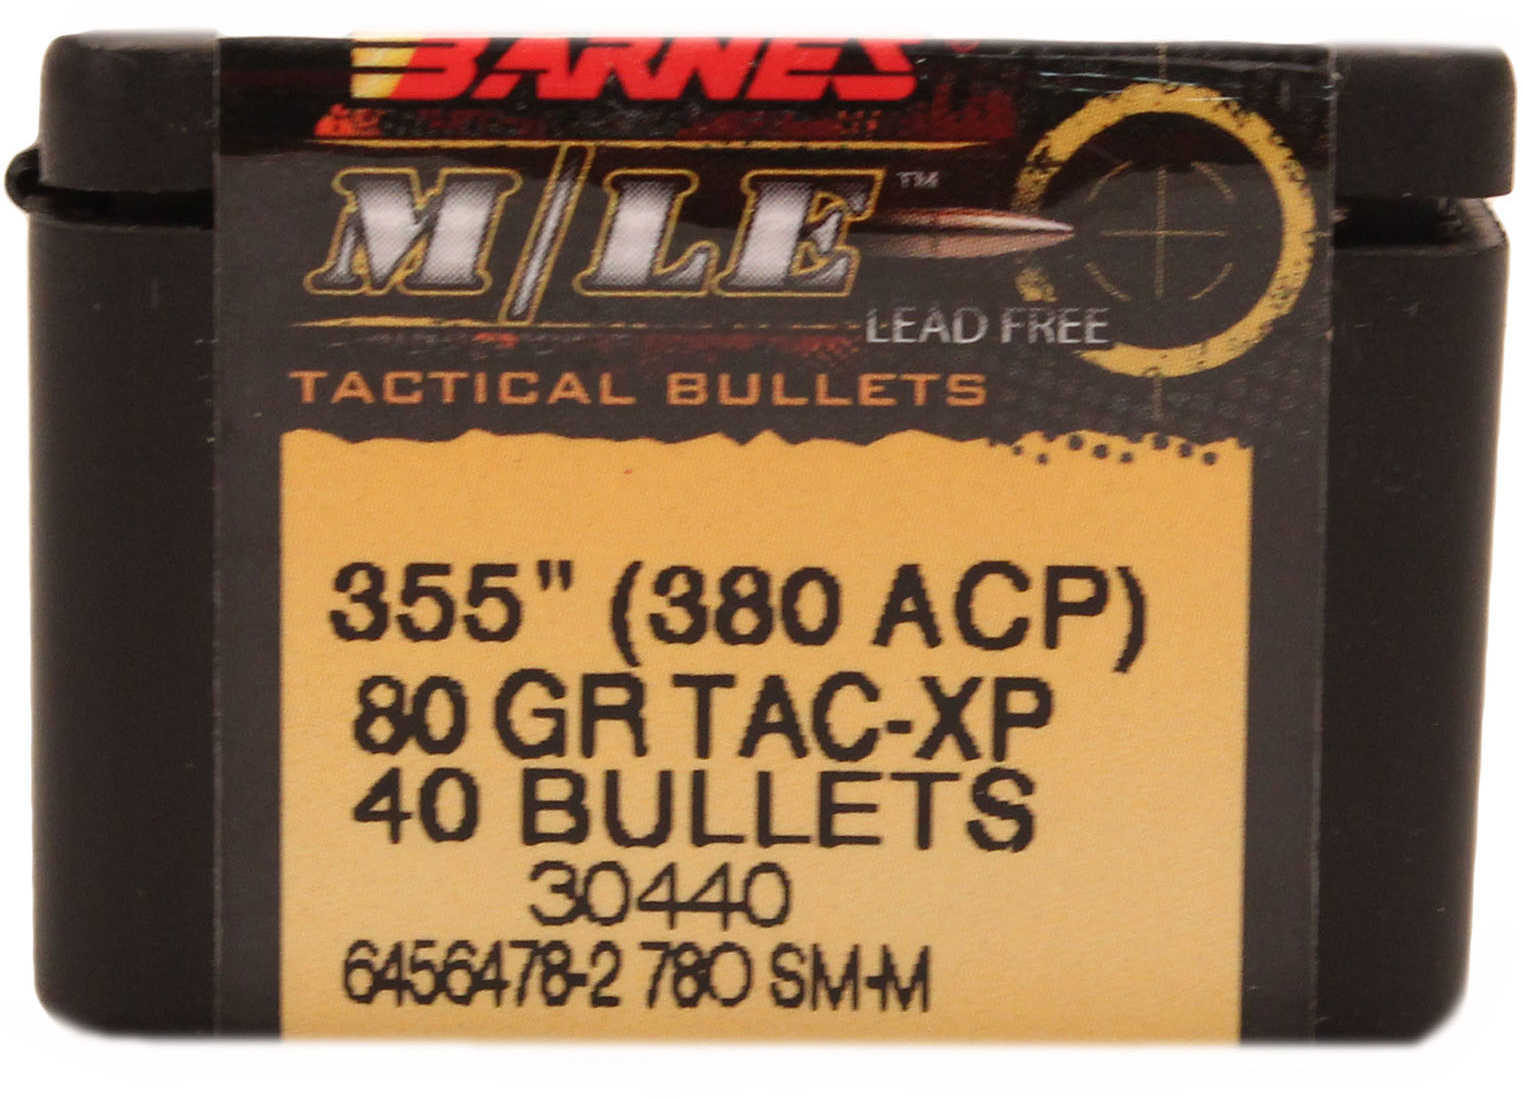 Barnes Bullets BAR 380 ACP 80 Grains TAC XP 40/Box 30440